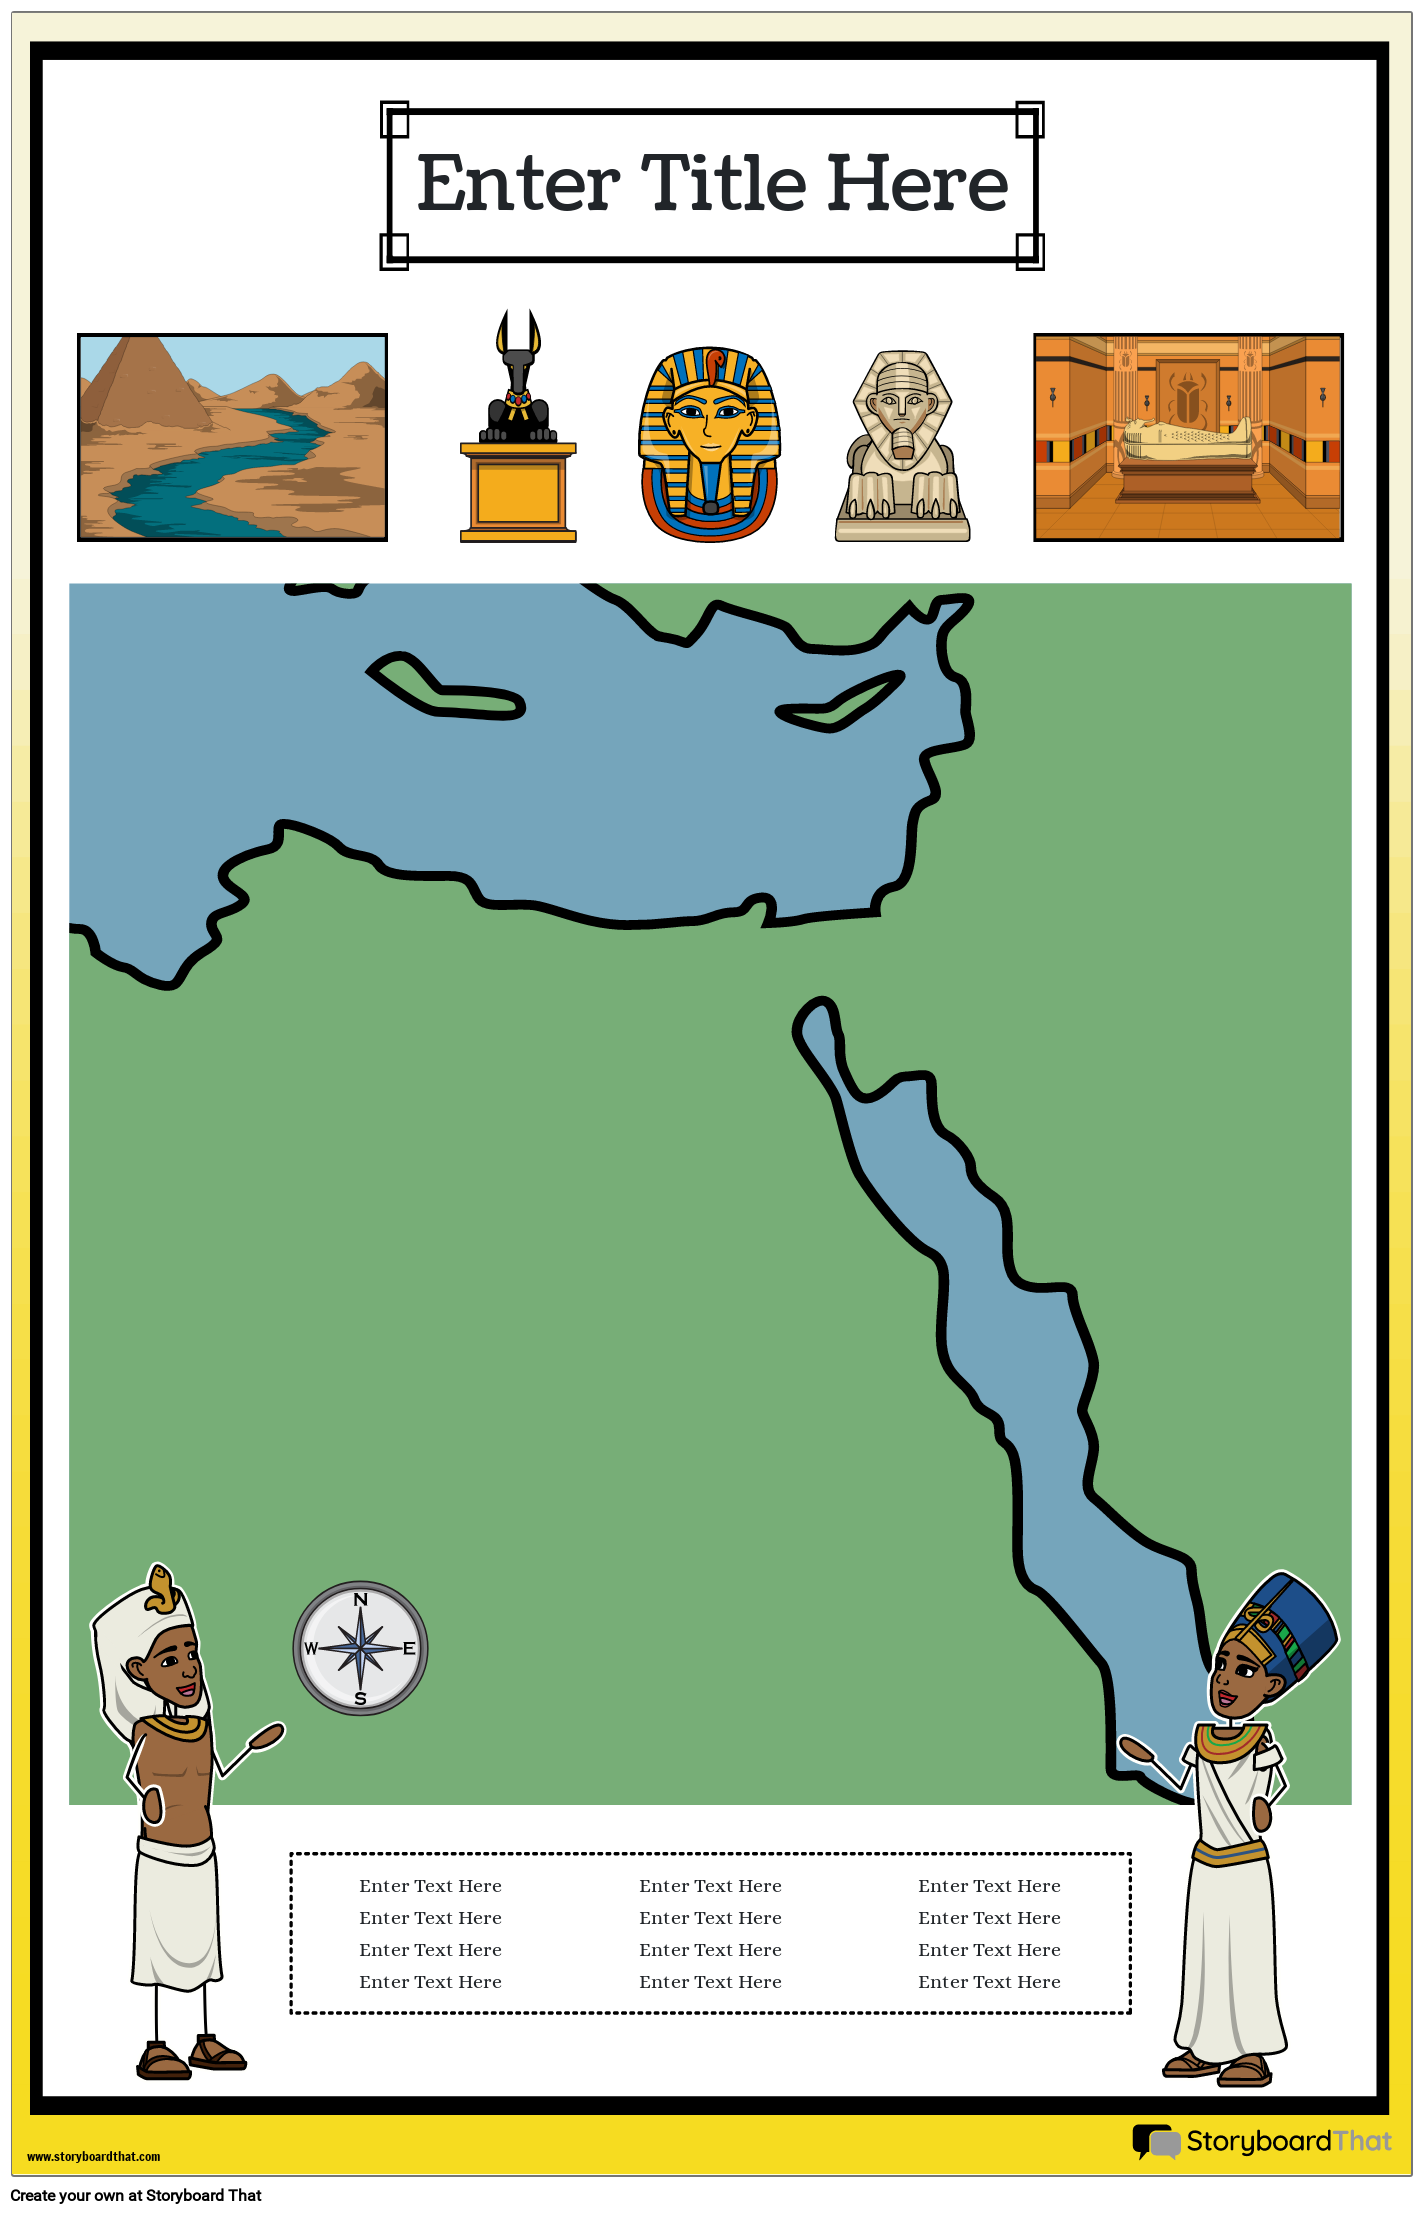 Karttajuliste 36 Värimuotokuva Muinainen Egypti